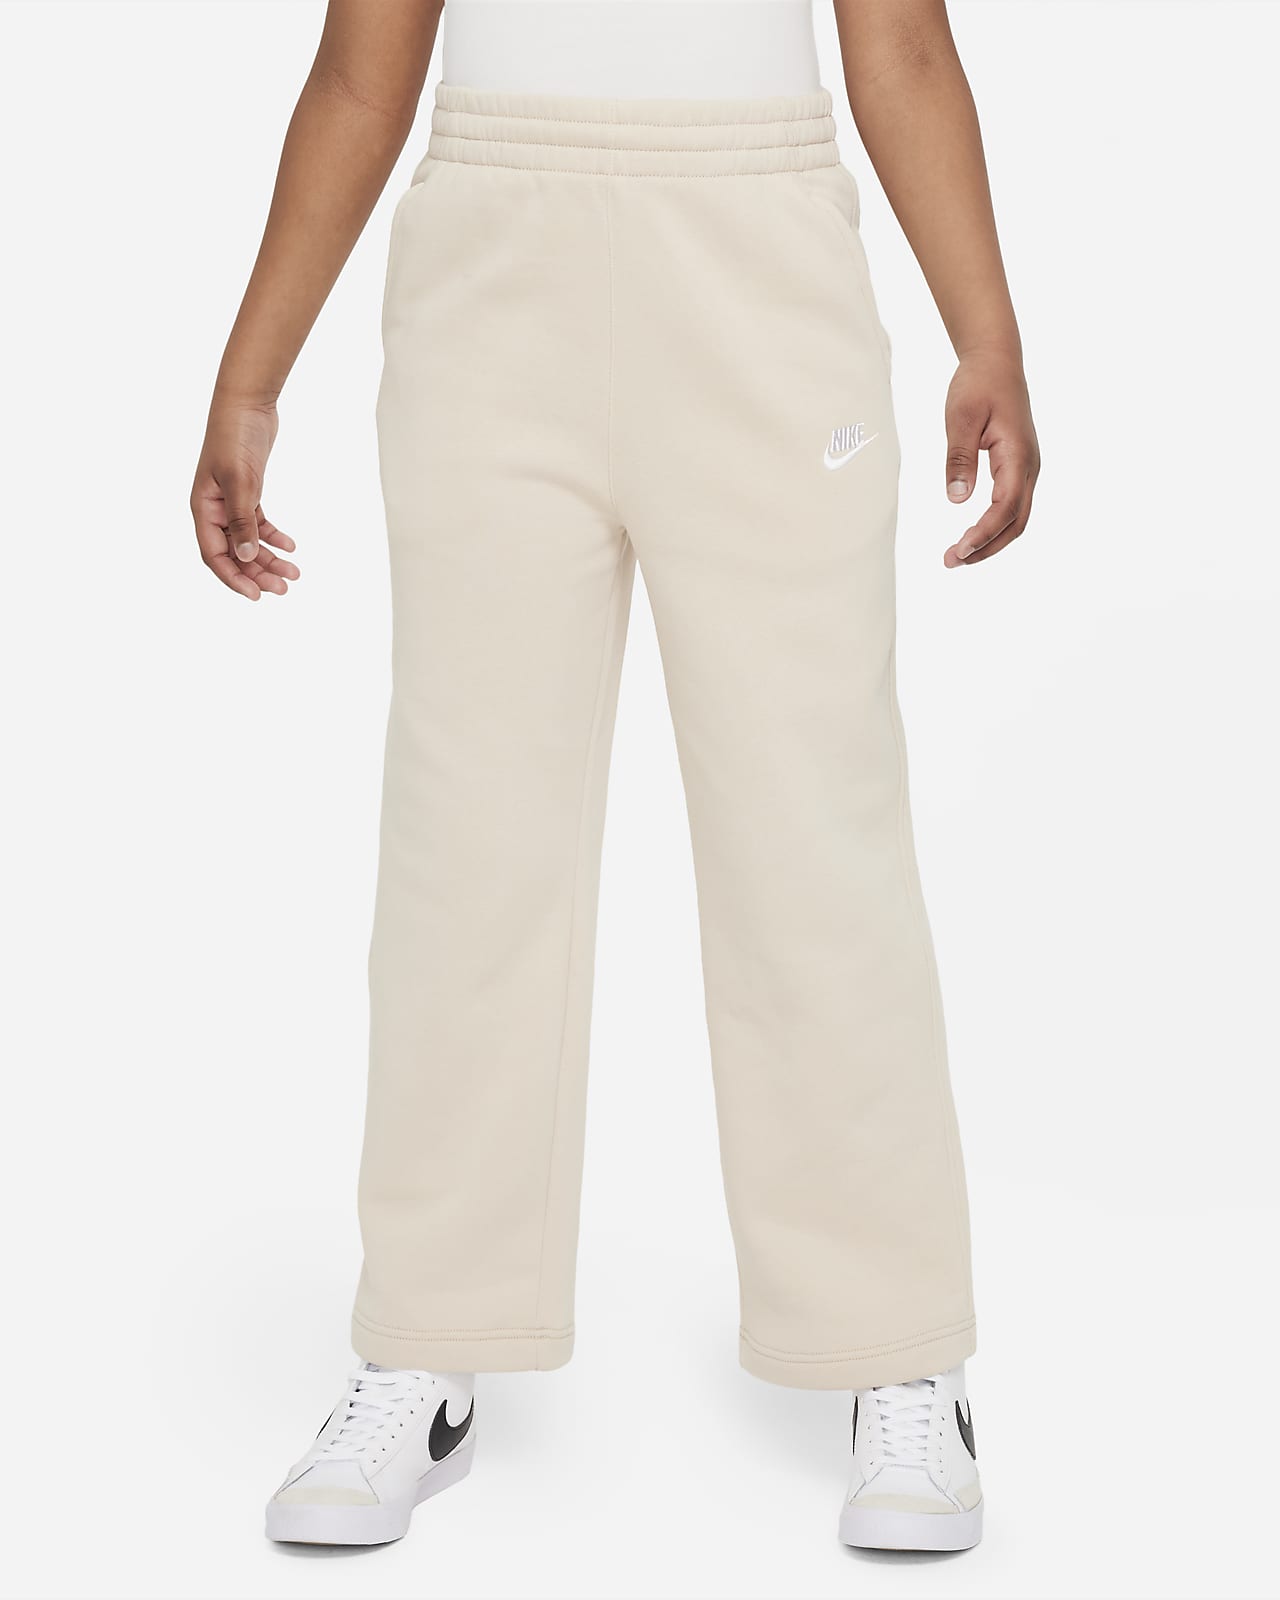 Sportswear Fleece Big Kids' (Girls') Wide-Leg Pants. Nike.com